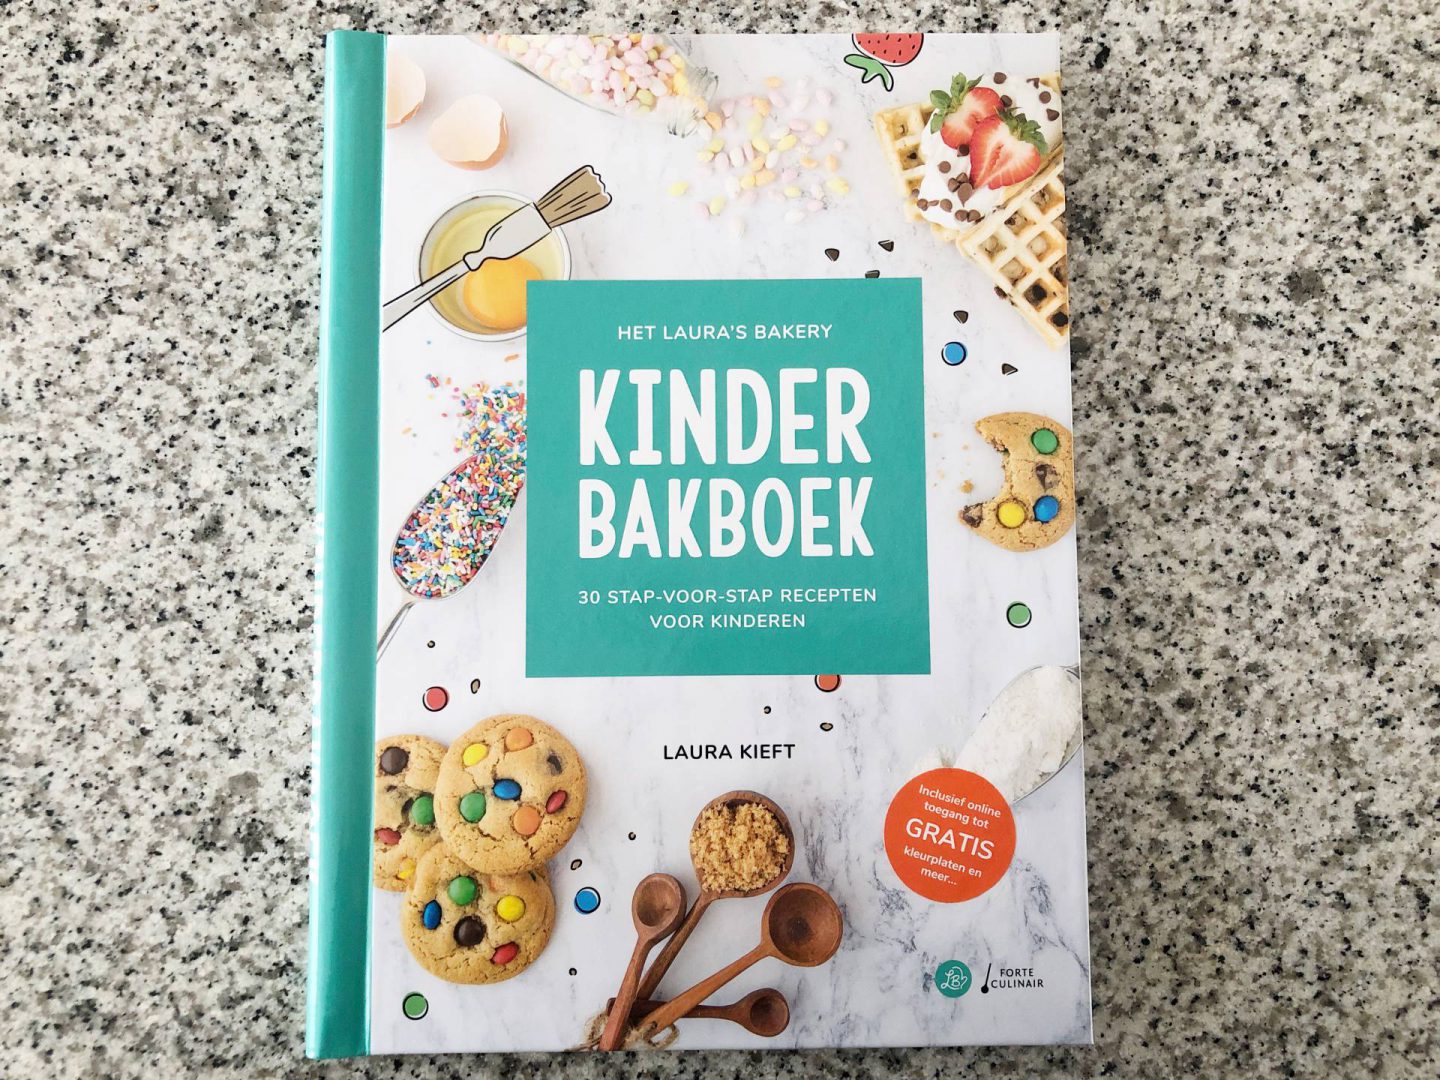 Het Laura’s Bakery Kinderbakboek